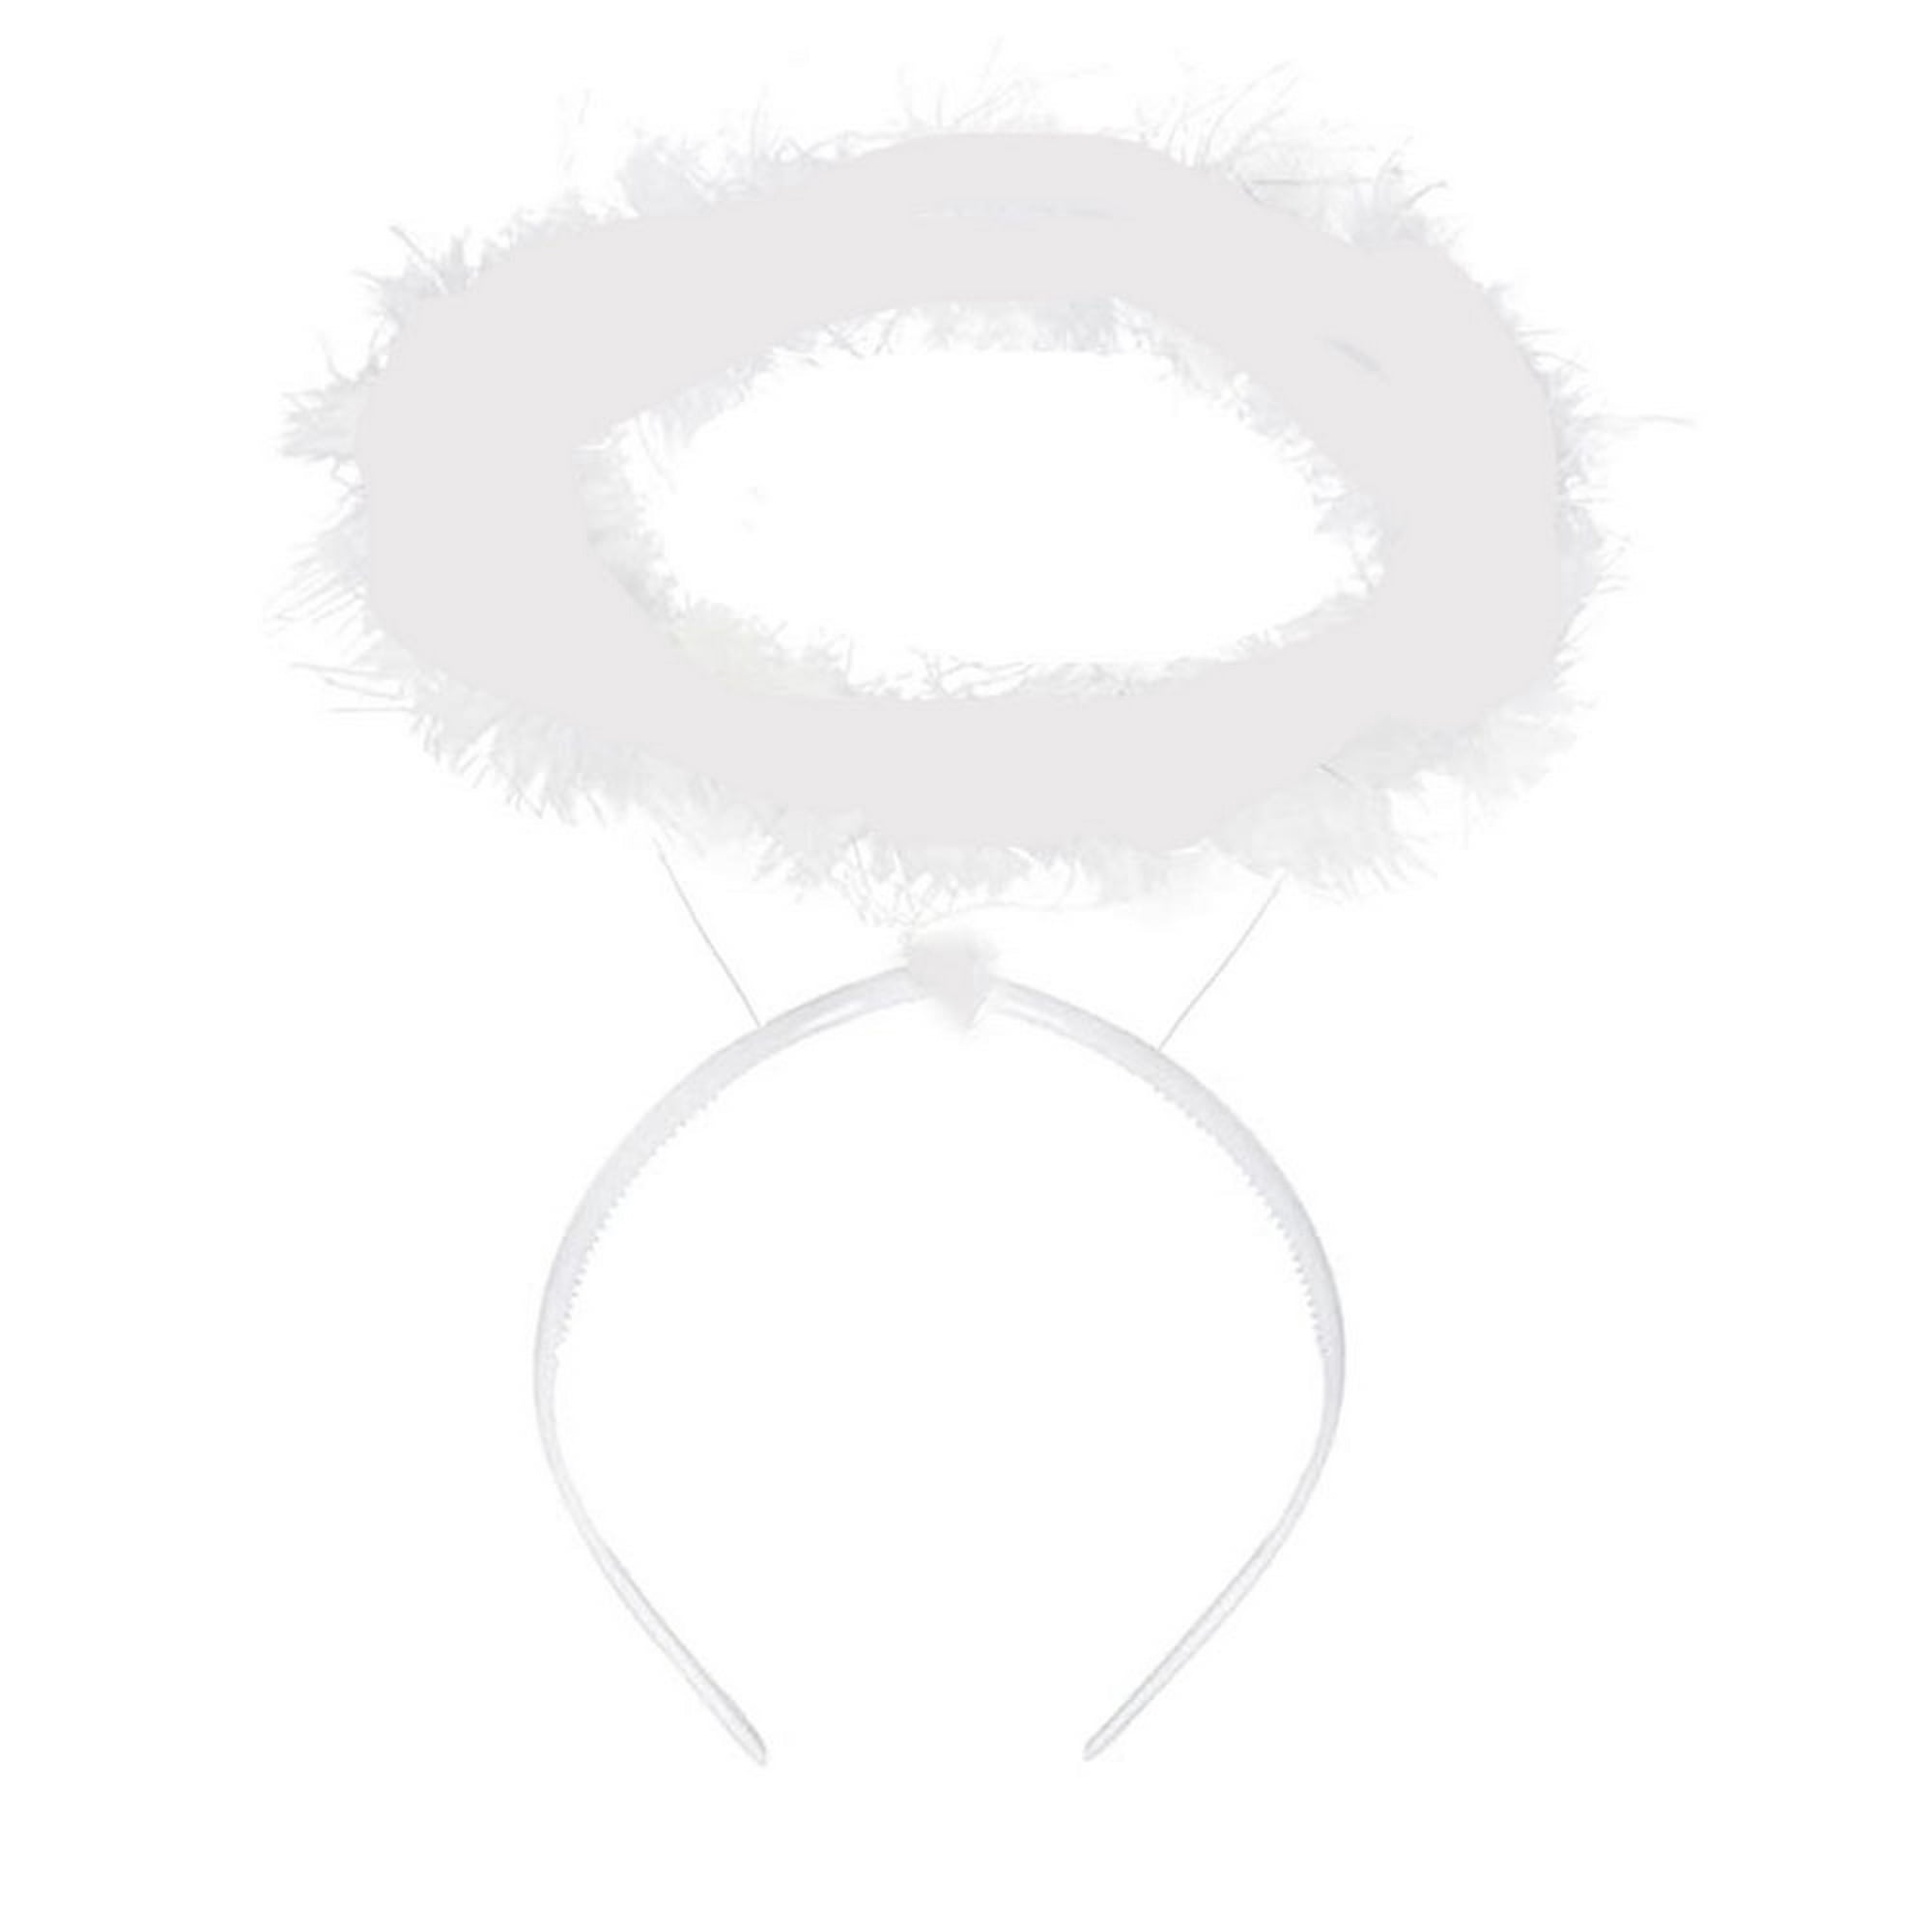 Angel Halo - Diadema esponjosa de plumas blancas, accesorios para disfraces  de ángel para adultos y niños Zhivalor 222228-2